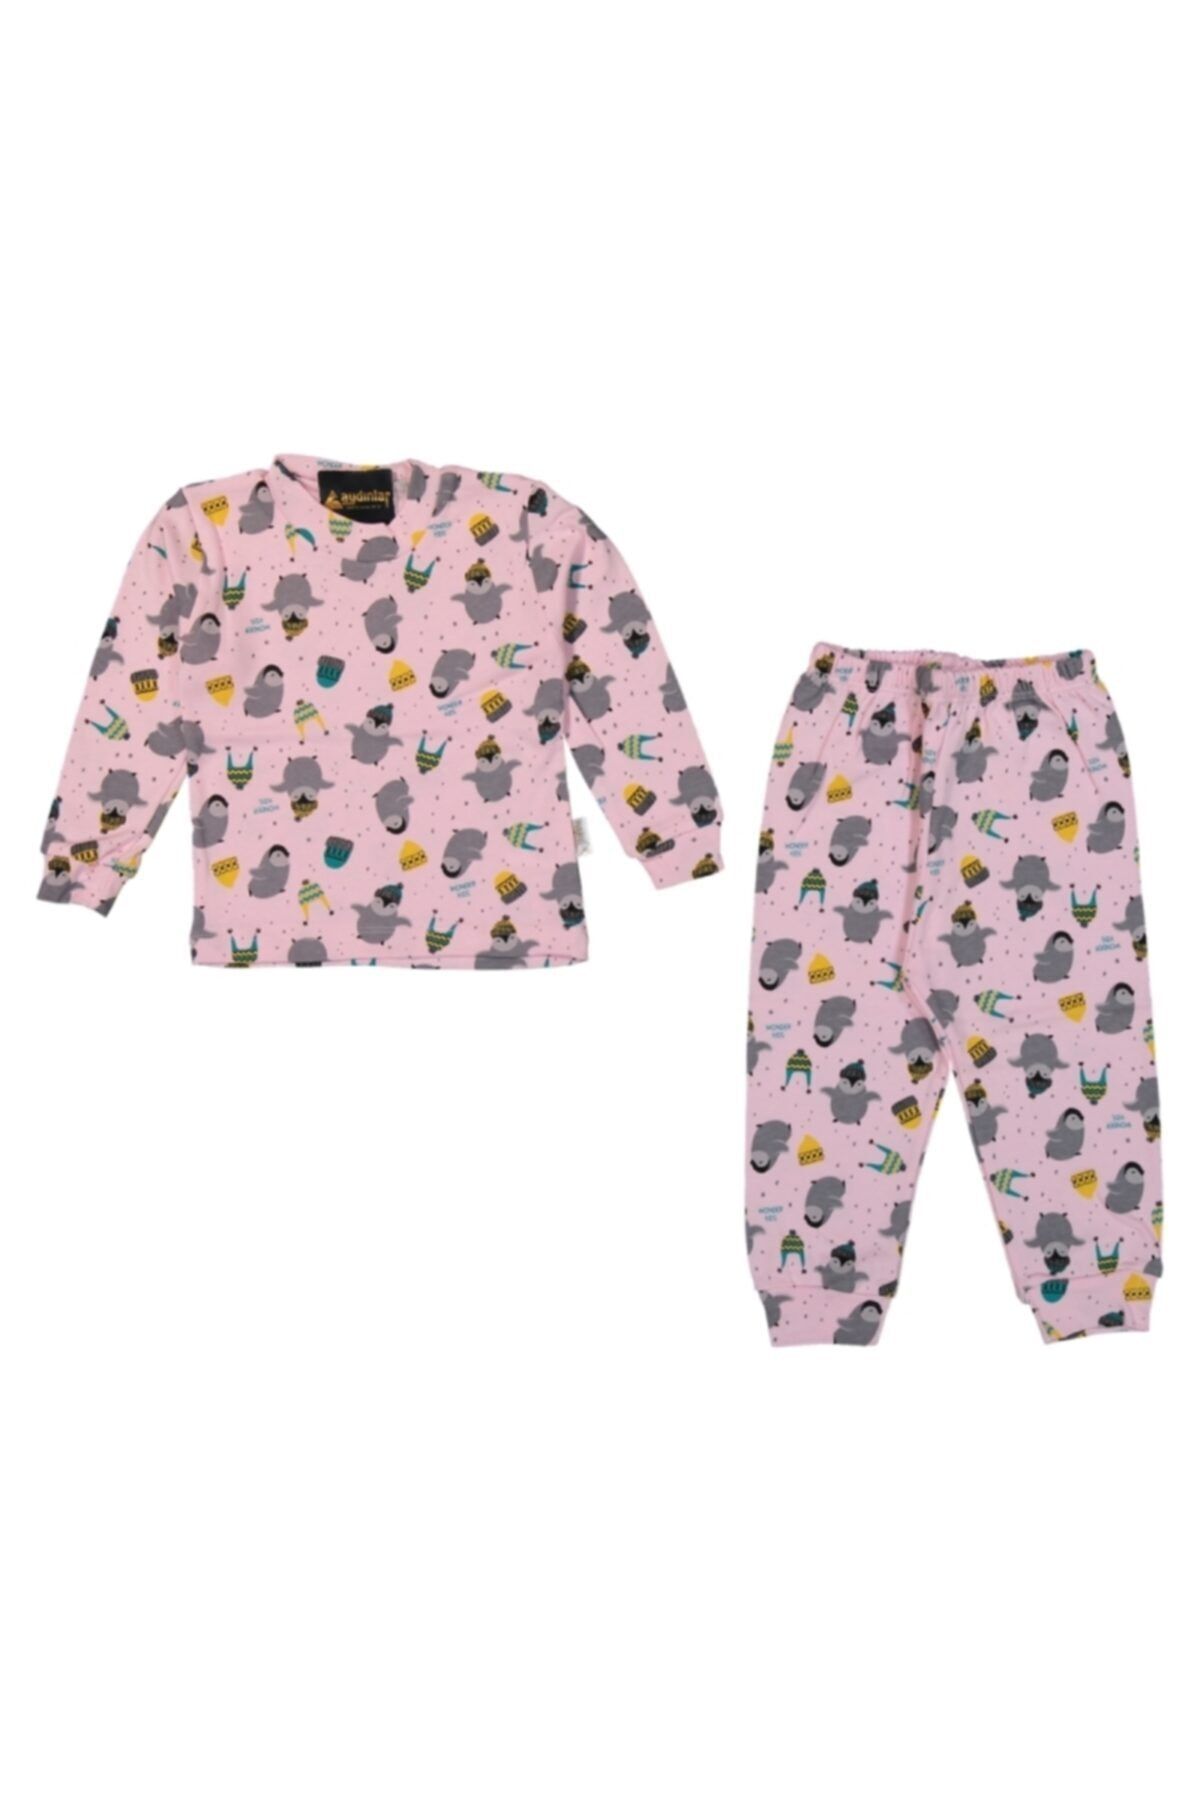 misobaby Unisex Bebek Pembe Penguen Baskılı Pijama Takımı